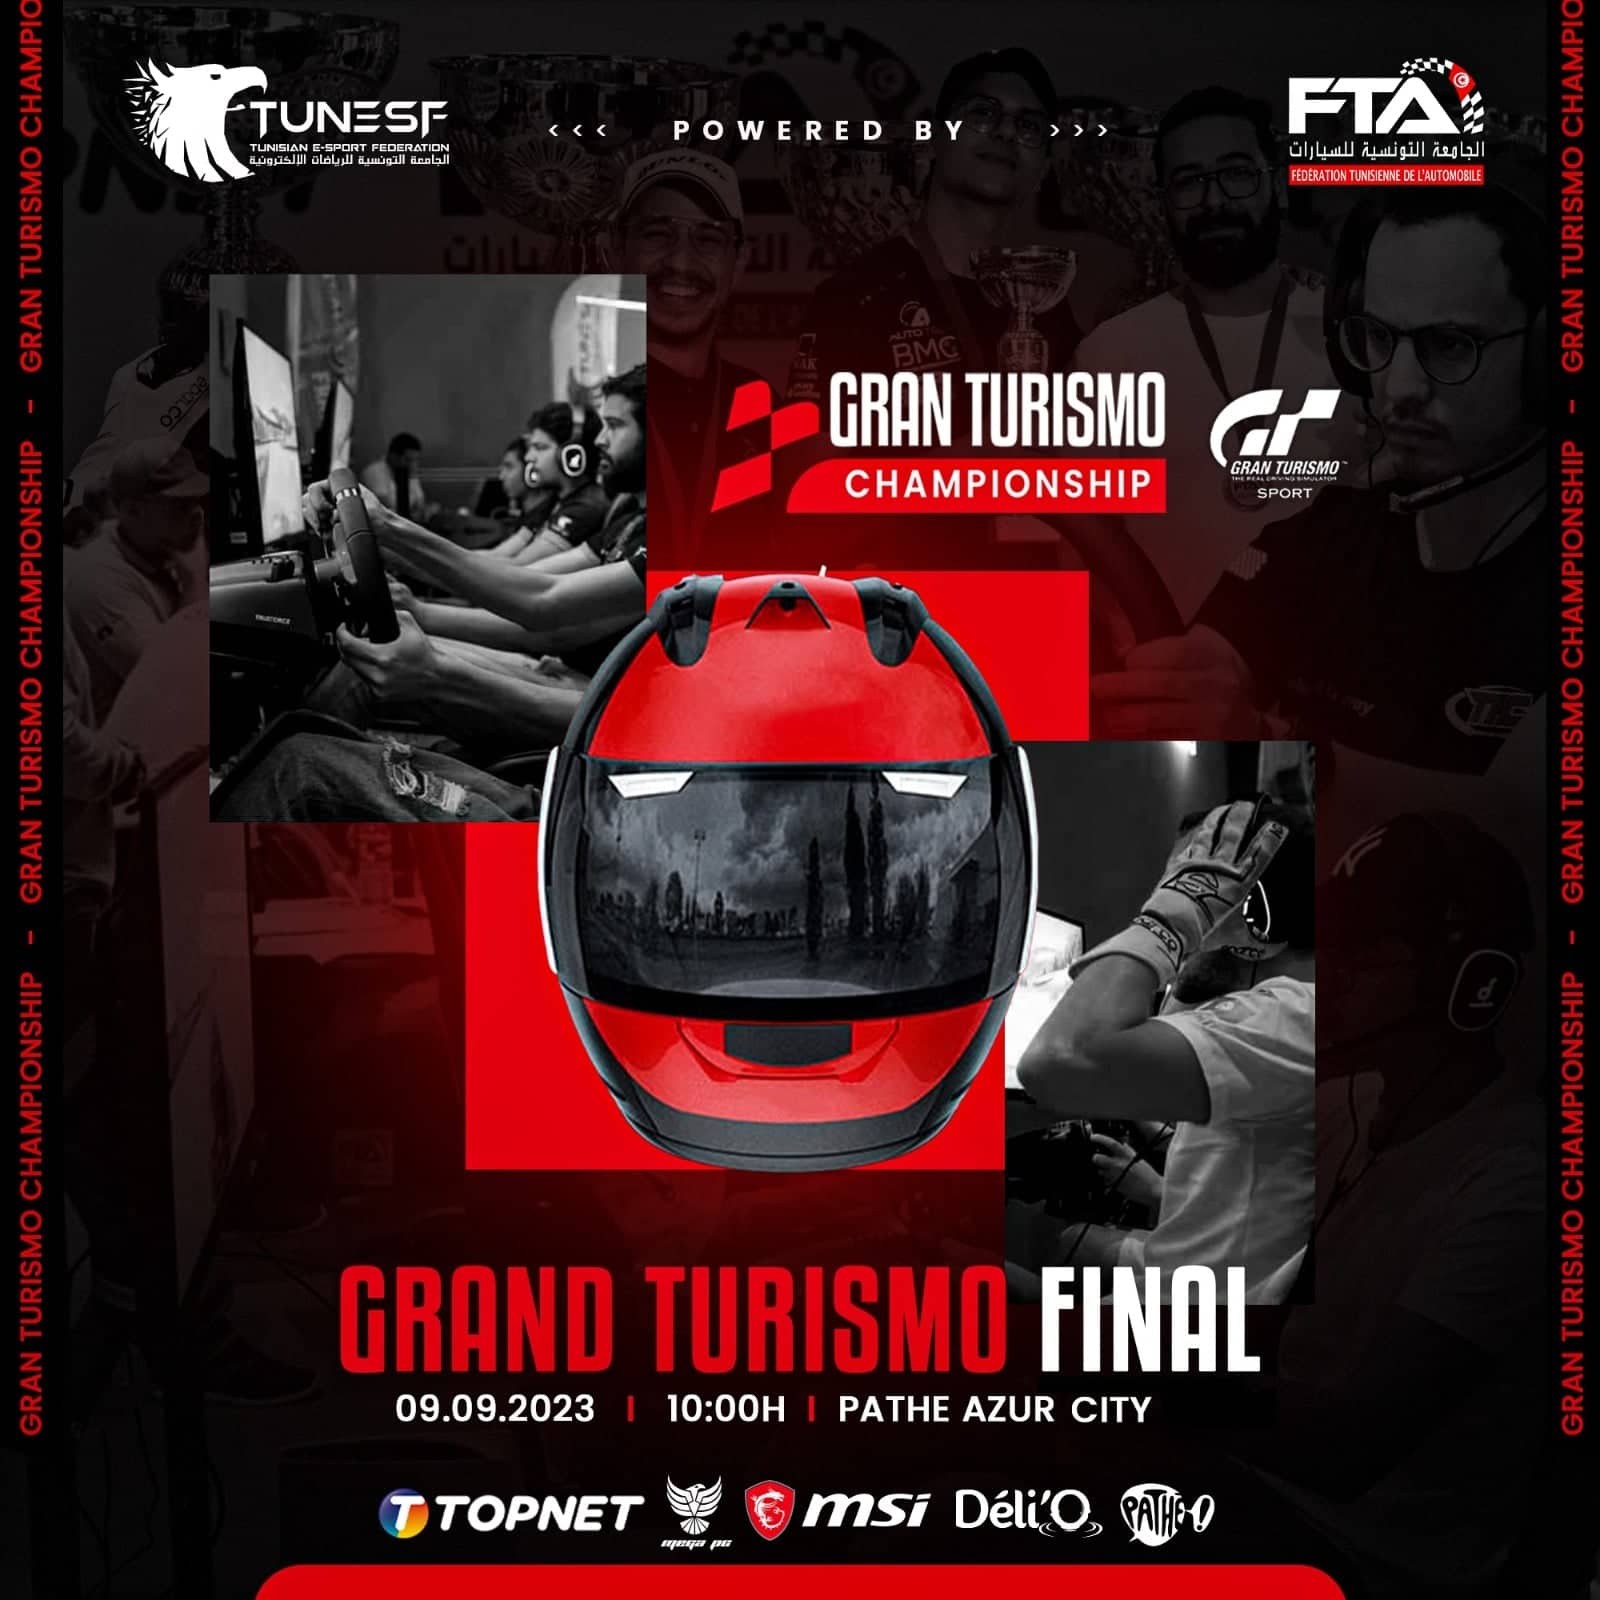 Final – Grand Turismo Championship 2023